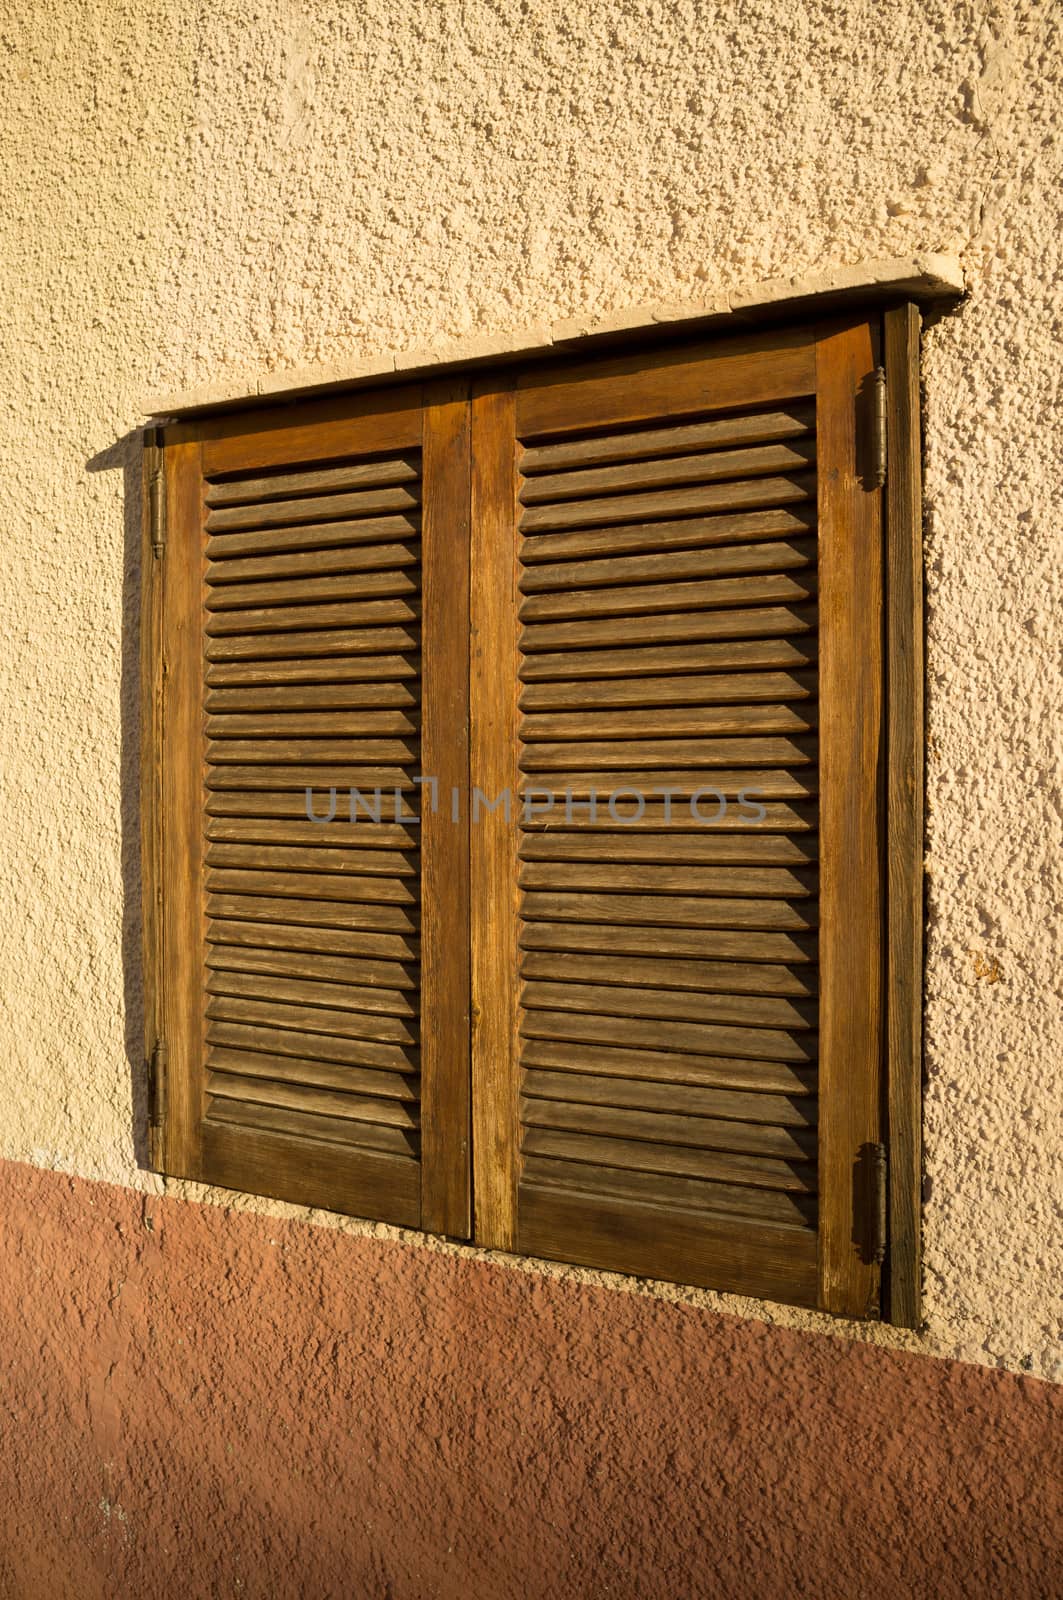 Window with shutters by hemeroskopion